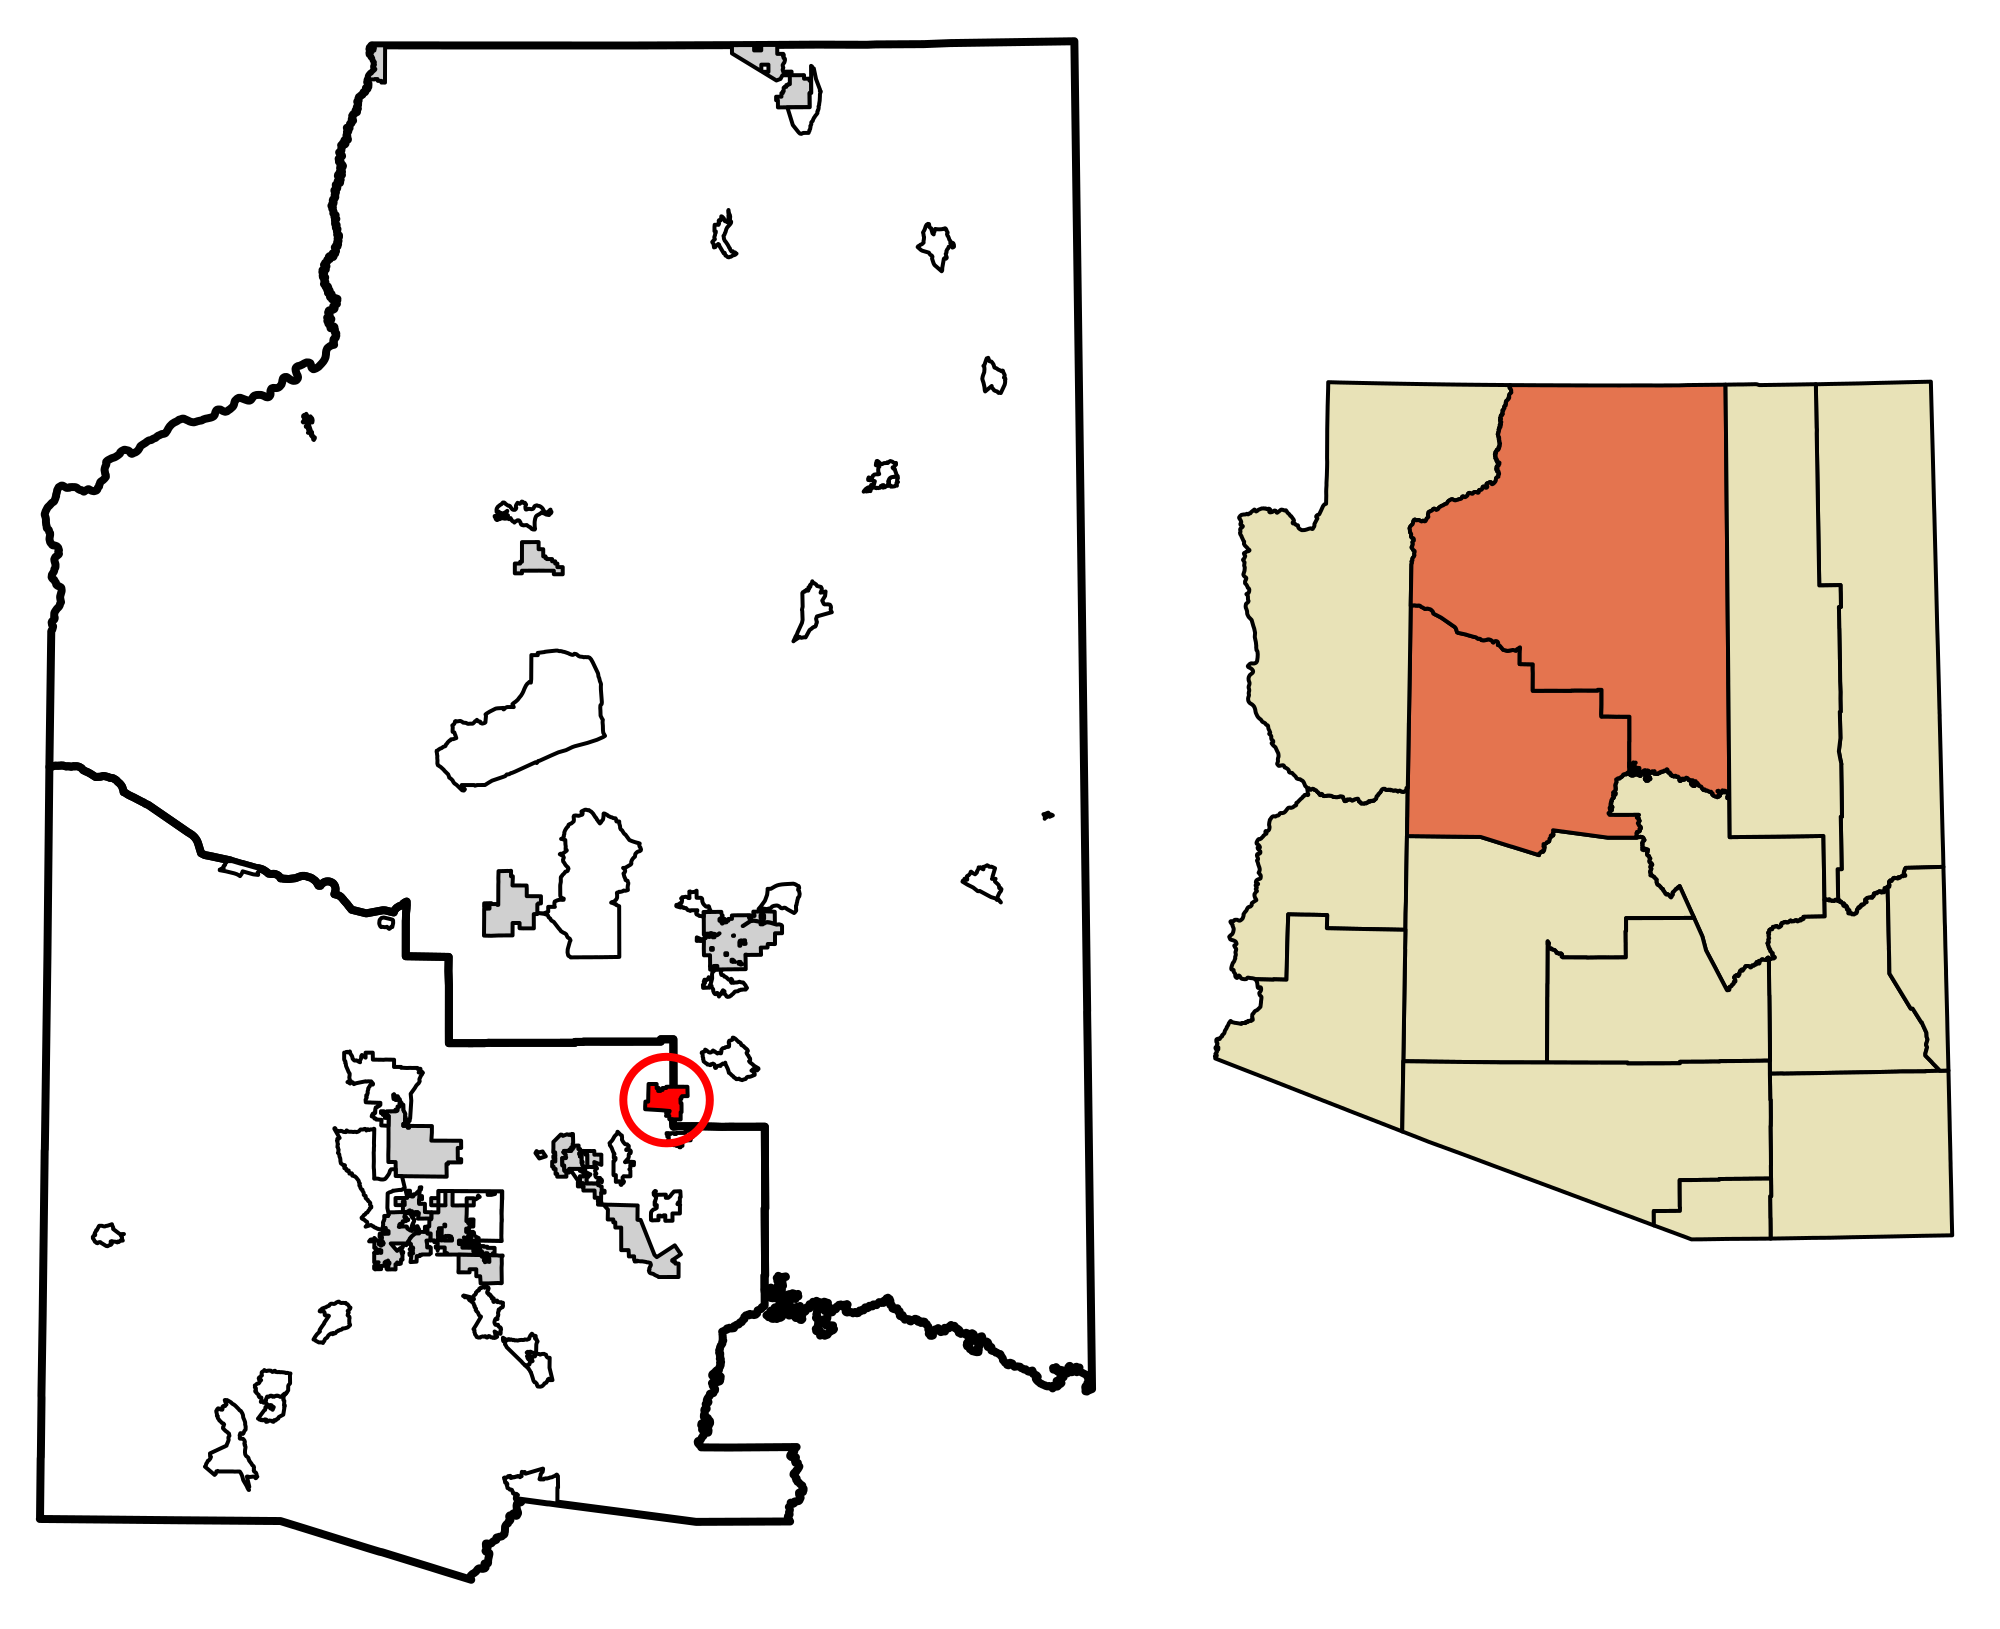 Sedona Arizona Wikipedia - roblox jailbreak winter update wiki